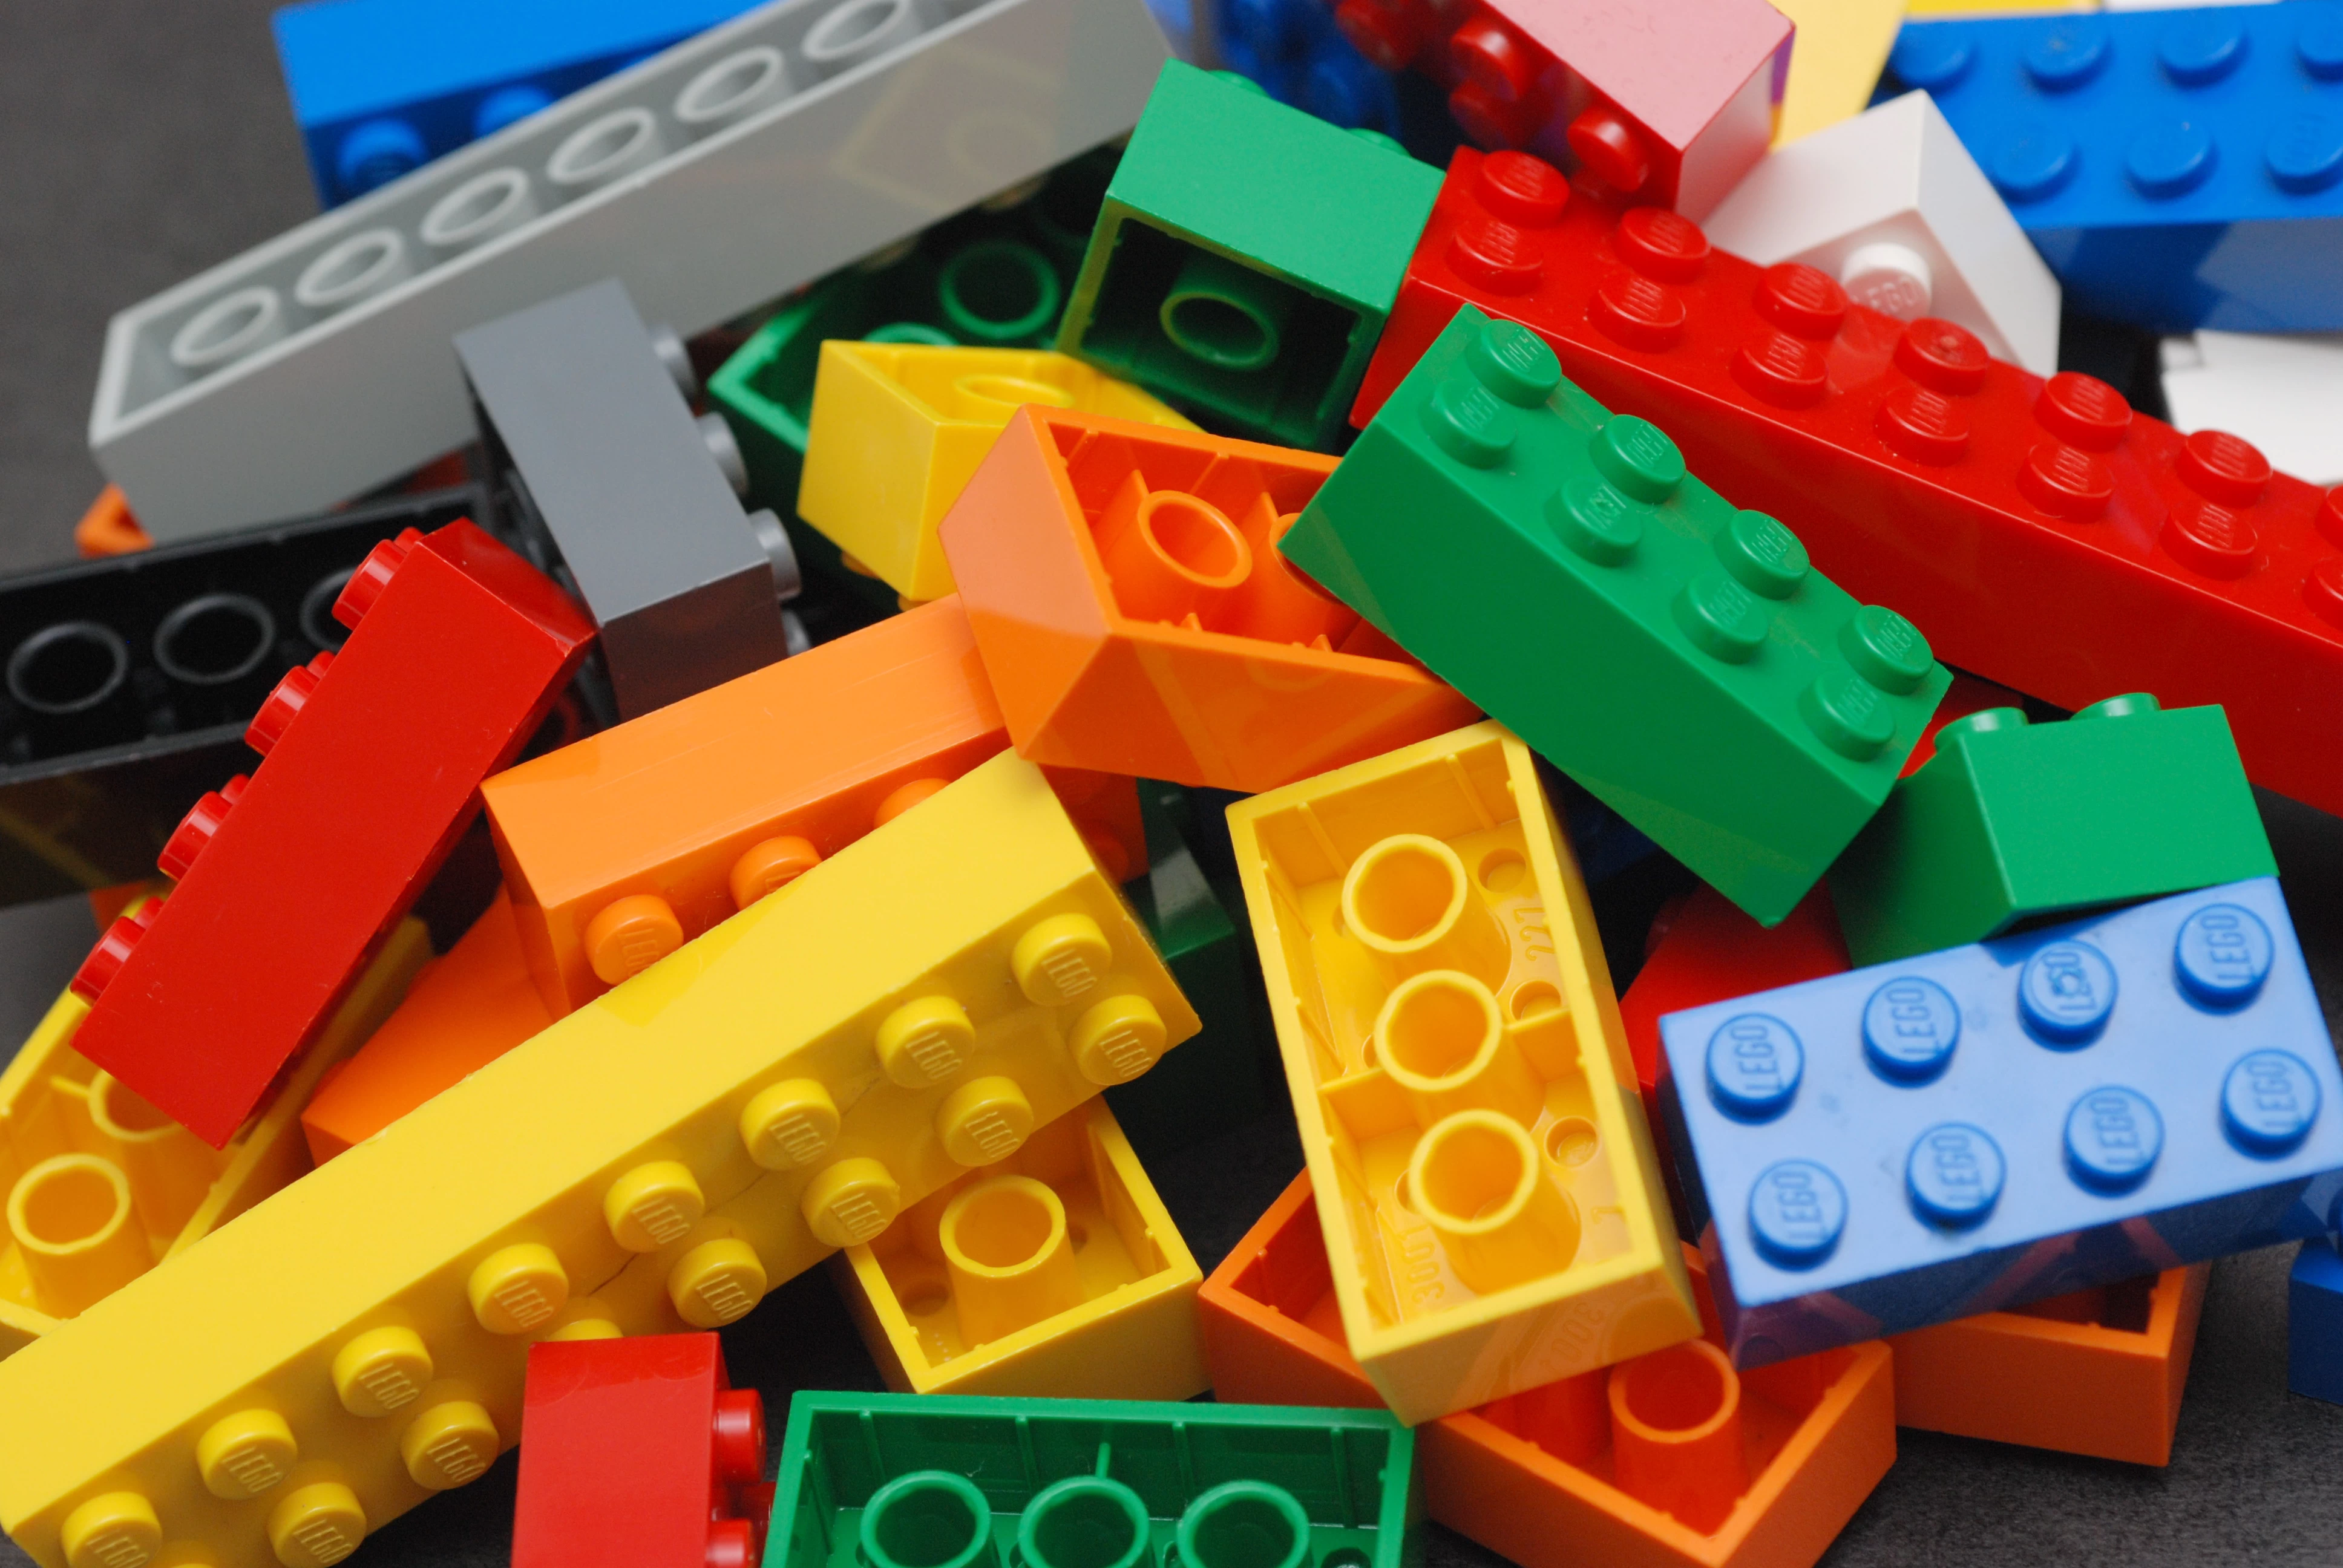 Lego Color Bricks | LEGO | [บทความ] มาดูวิวัฒนาการของโลโก้ระดับโลก LEGO พ่อมดแห่งตัวต่อพลาสติก!!!